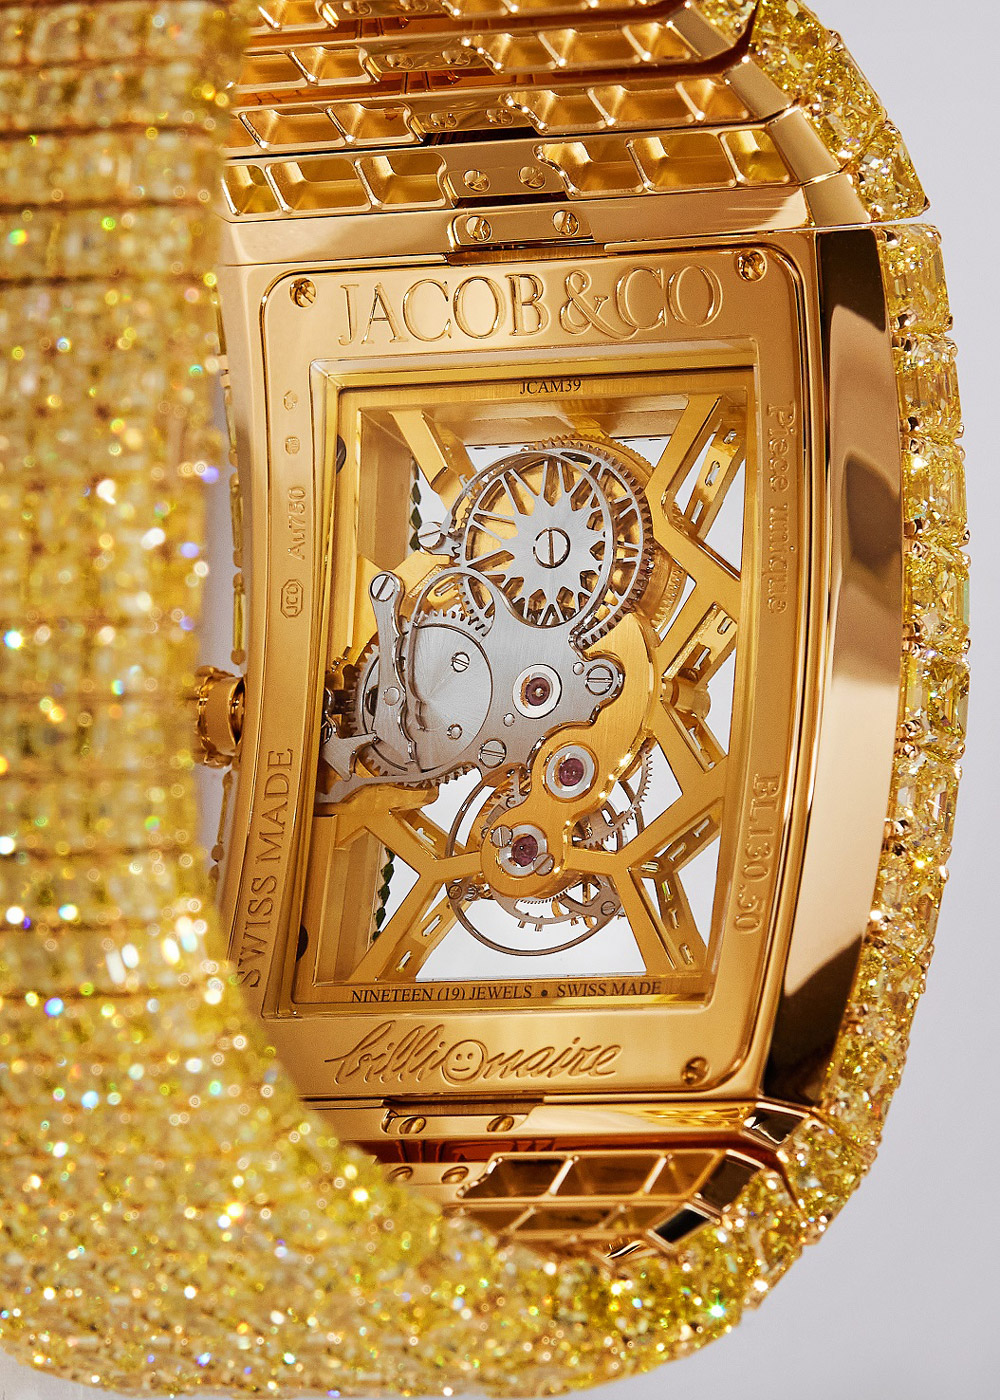 Jacob & Co. ra mắt đồng hồ tỉ phú trị giá 470 tỉ đồng